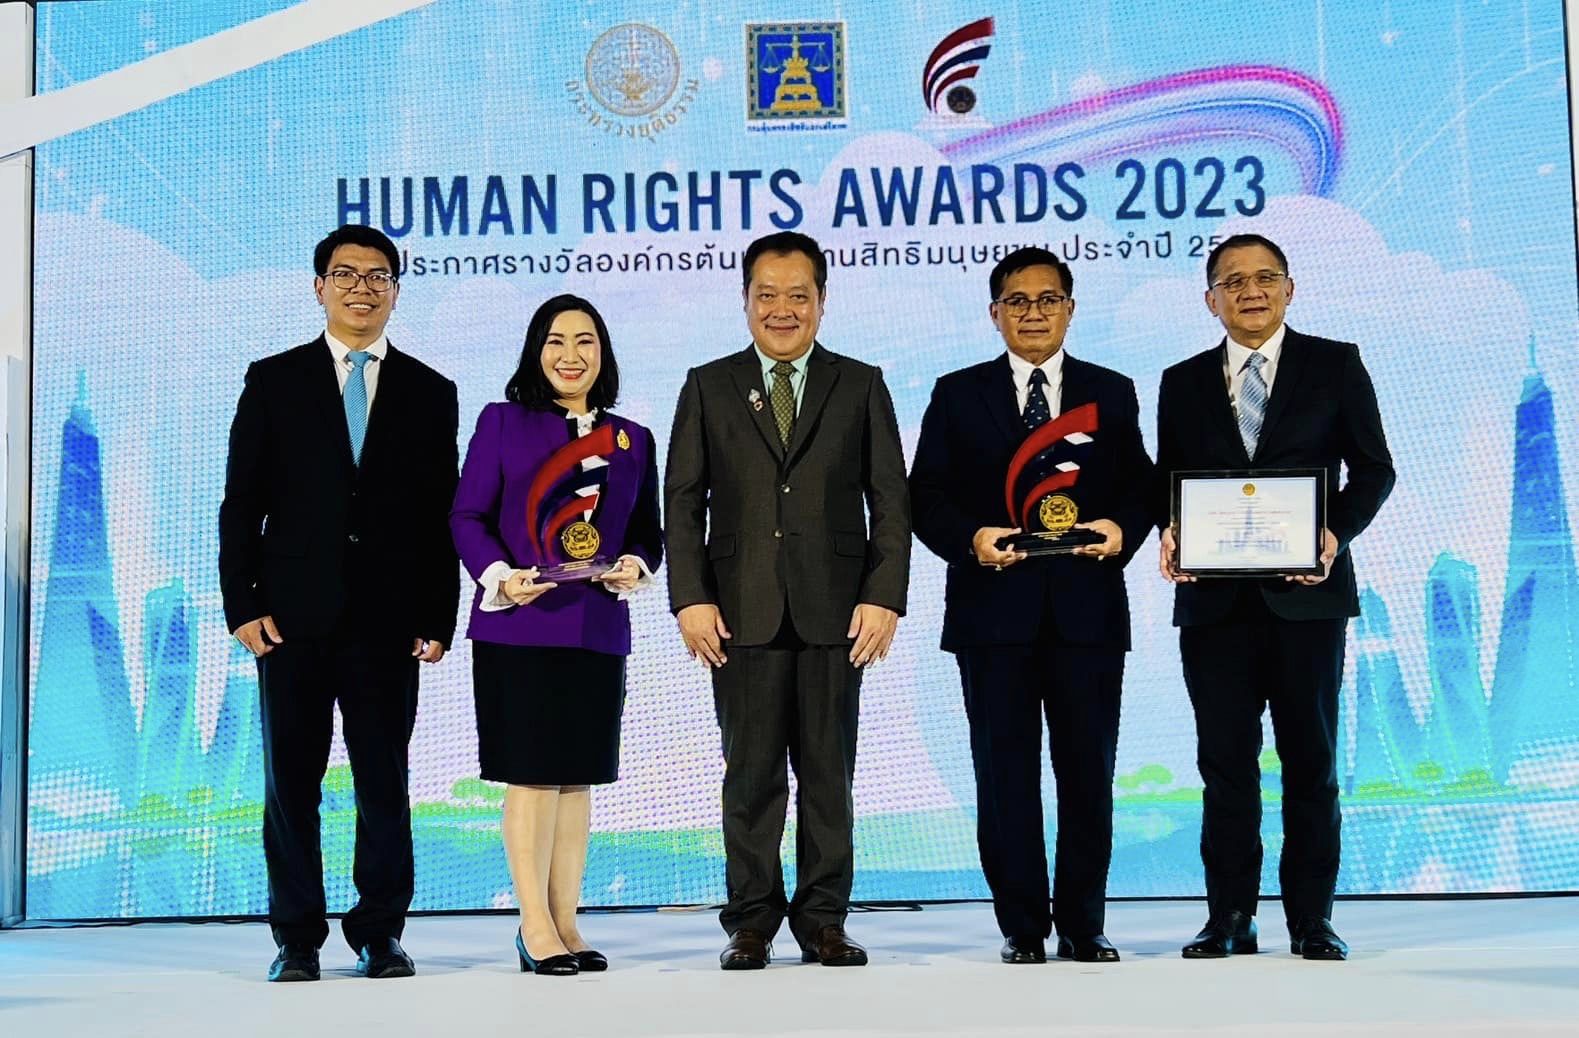 “จังหวัดพิษณุโลก” ได้รับเลือกเป็น องค์กรต้นแบบด้านสิทธิมนุษยชน ประจำปี 2566 ระดับดีเด่น (Human Rights Awards 2023) จากกระทรวงยุติธรรม